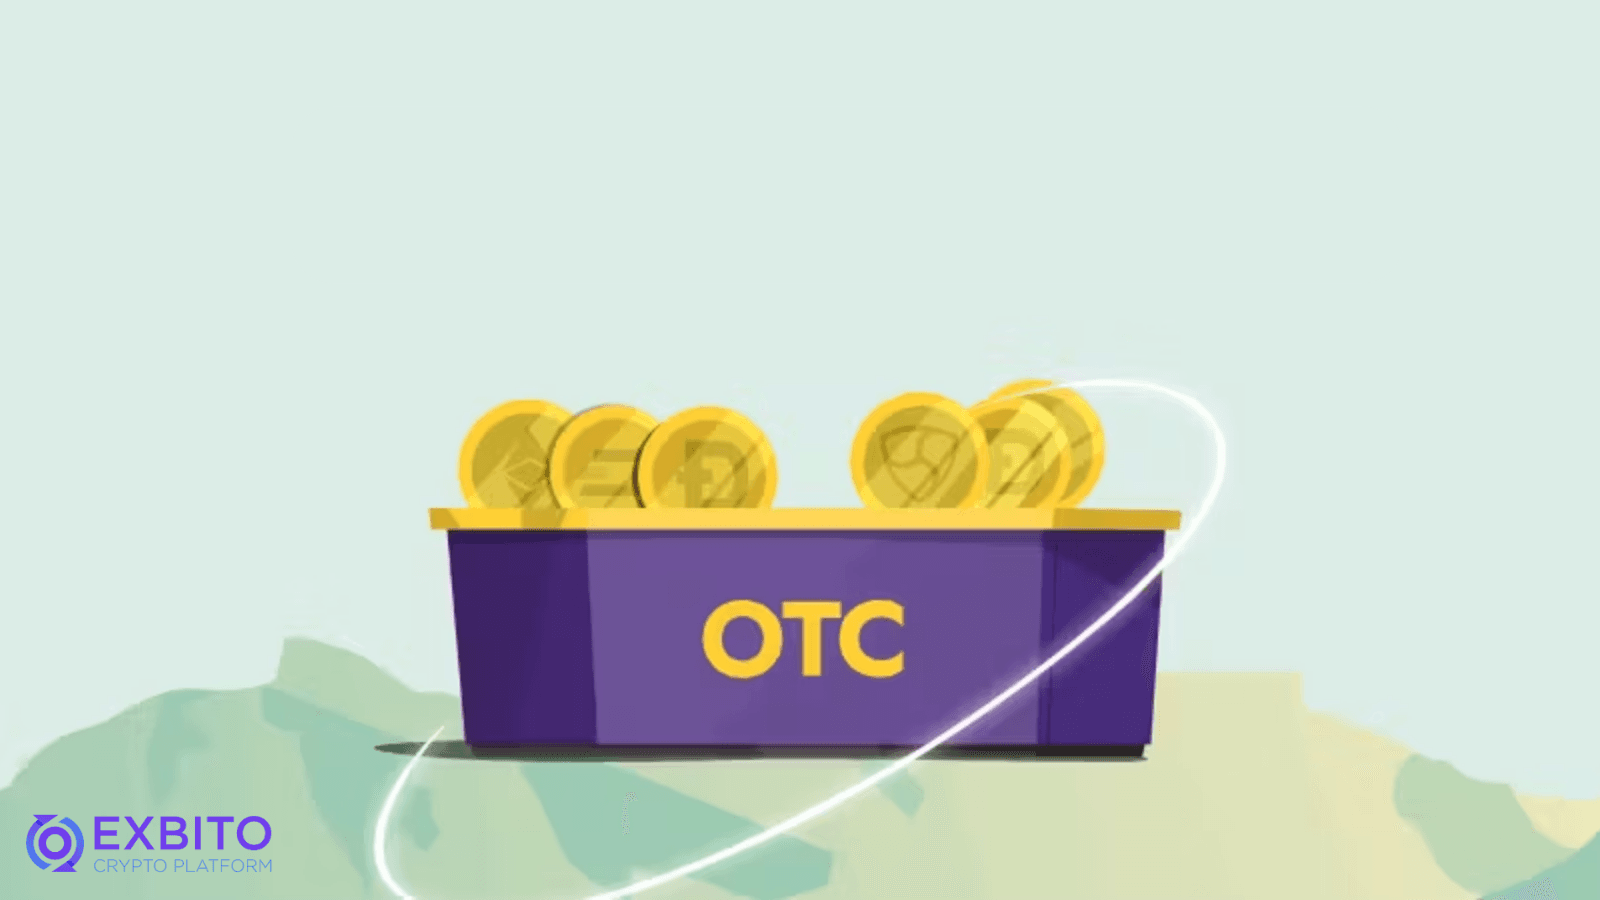 در بازار کریپتو OTC به چه معناست؟